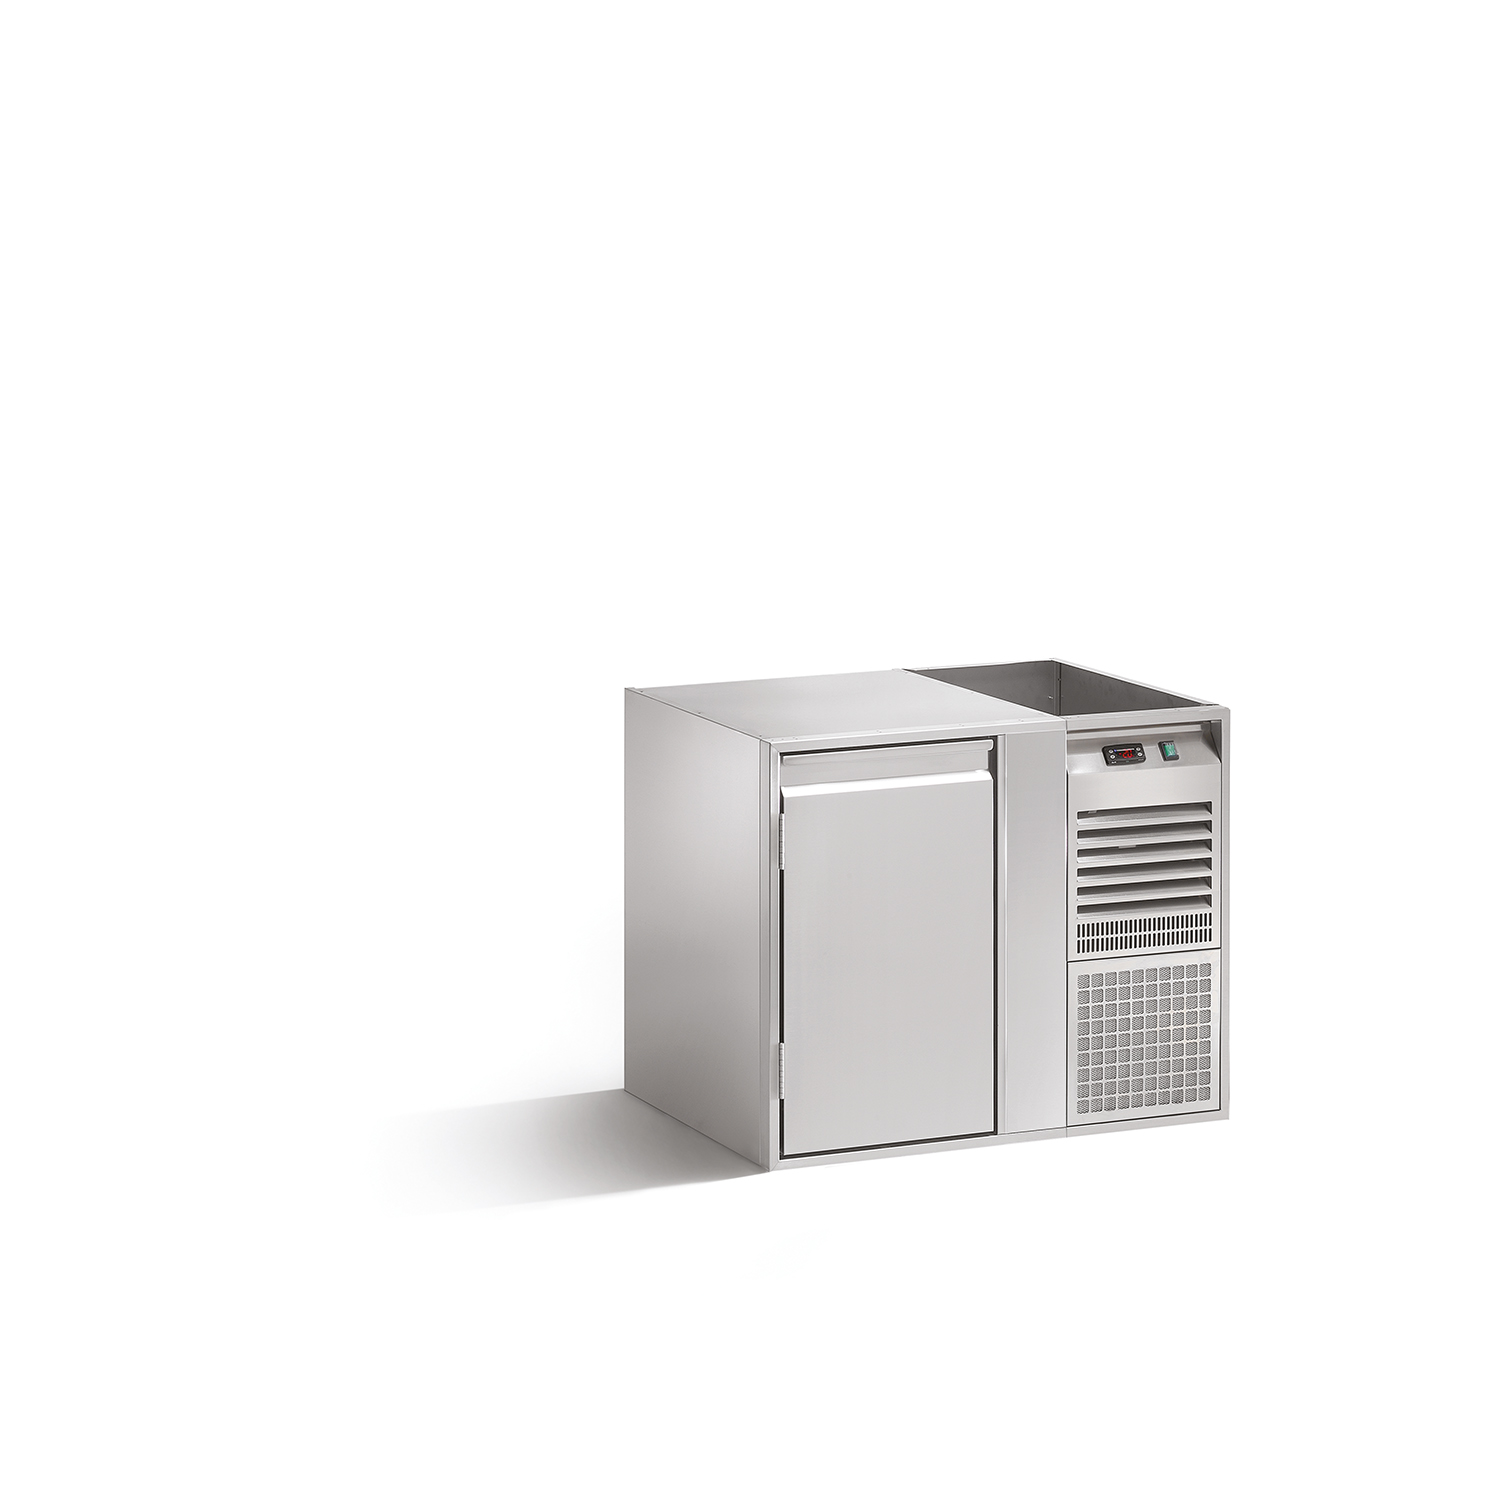 Tiefkühlunterbau GN PREMIUM, B 950 x T 660 x H 760 mm, mit 1 Kühlfach, steckerfertig